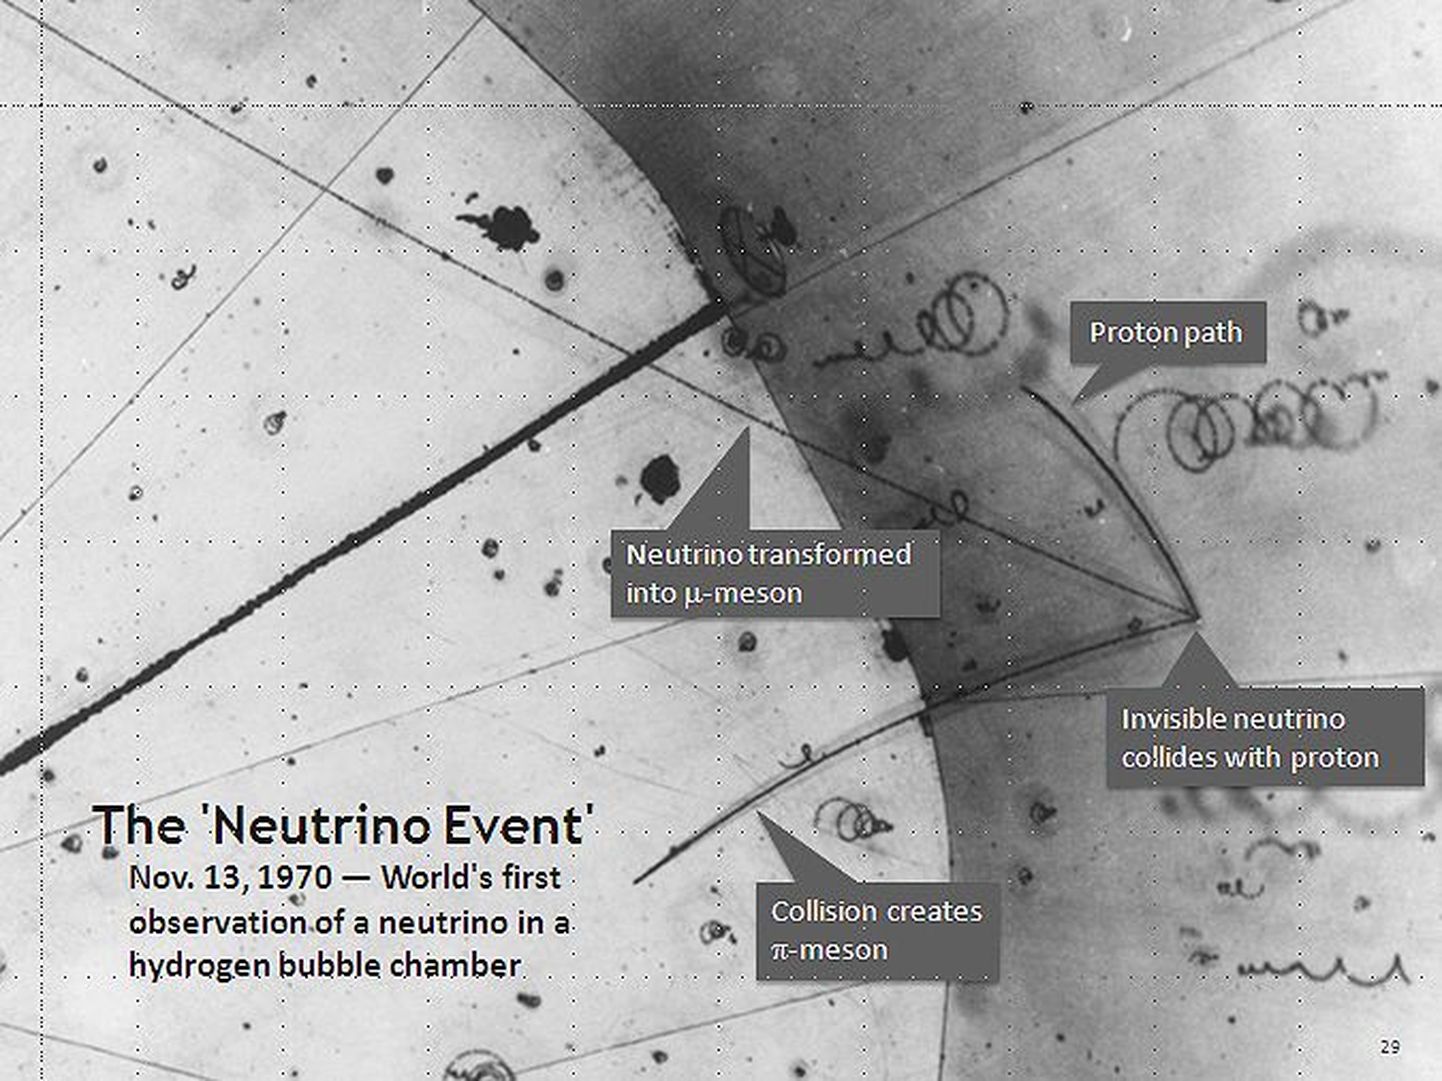 Maailma esimese neutriino vaatluse skeem 1970. aastast.